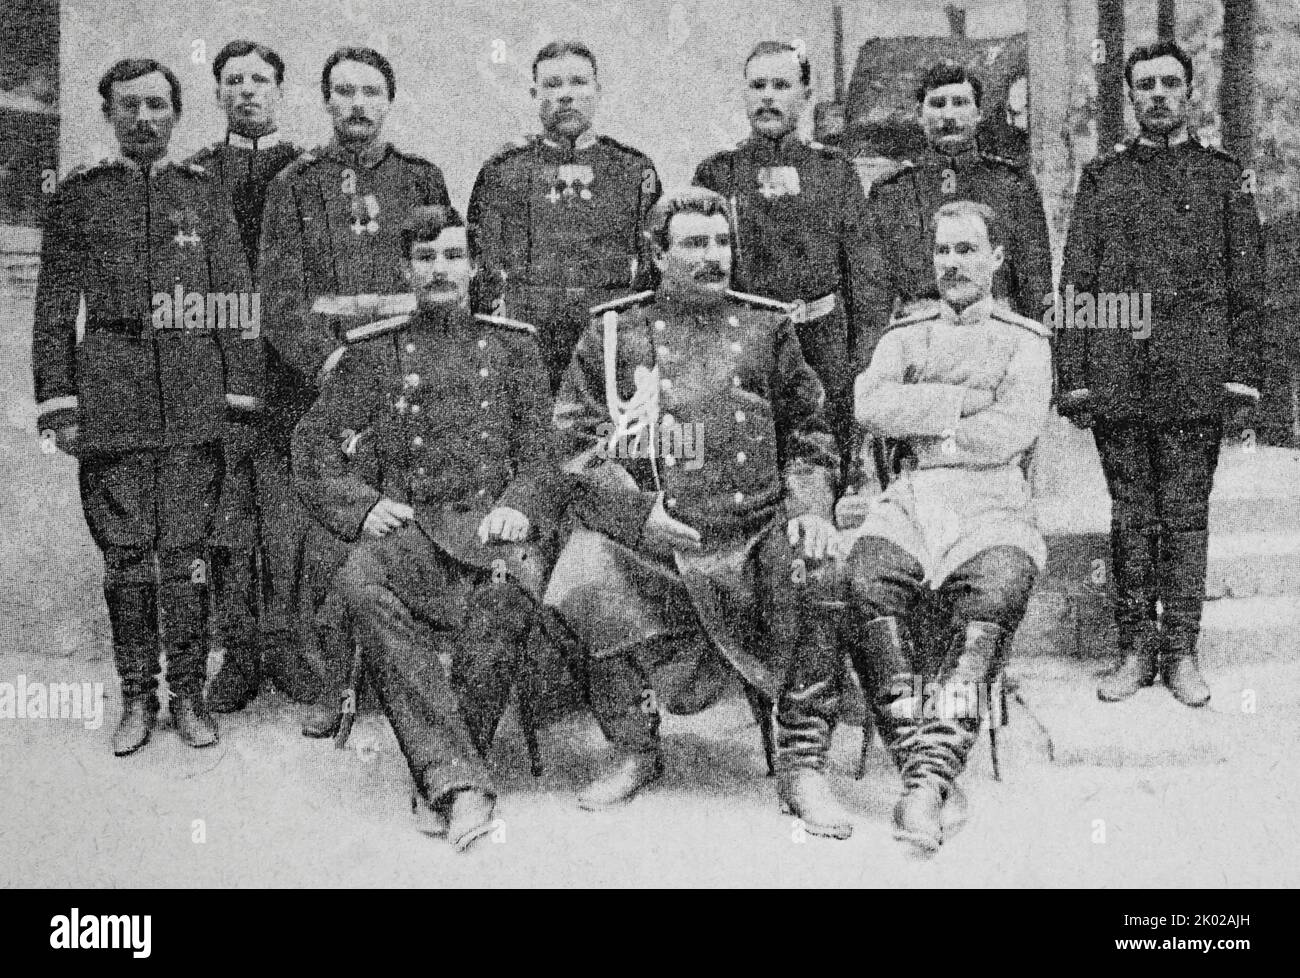 Eine Gruppe von Teilnehmern an der Expedition von N.M. Prschewalski. Sitzen (von links nach rechts): PK Kozlov, N.M. Prschewalski, W. I. Roborovsky. Foto von den 80s des 19.. Jahrhunderts. Stockfoto